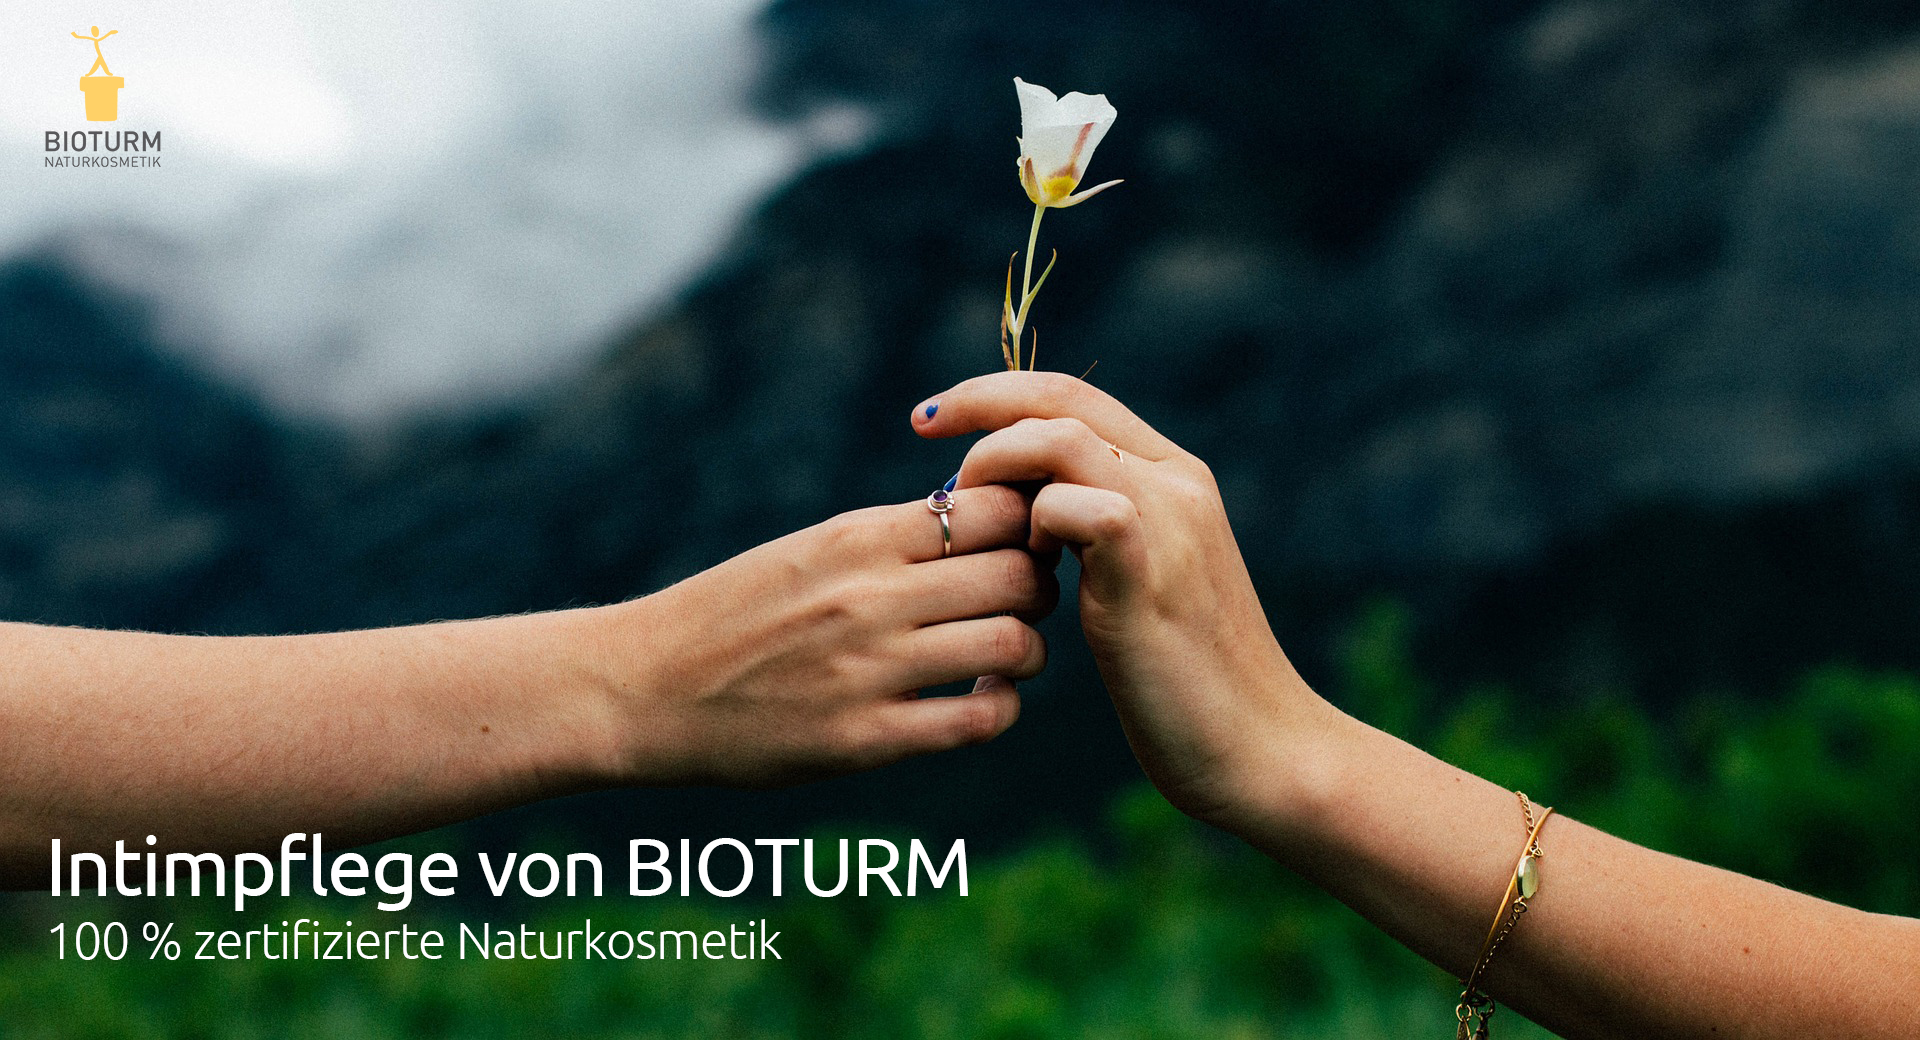 Zwei Hände halten eine weiße Blume mit dem Logo von BIOTURM